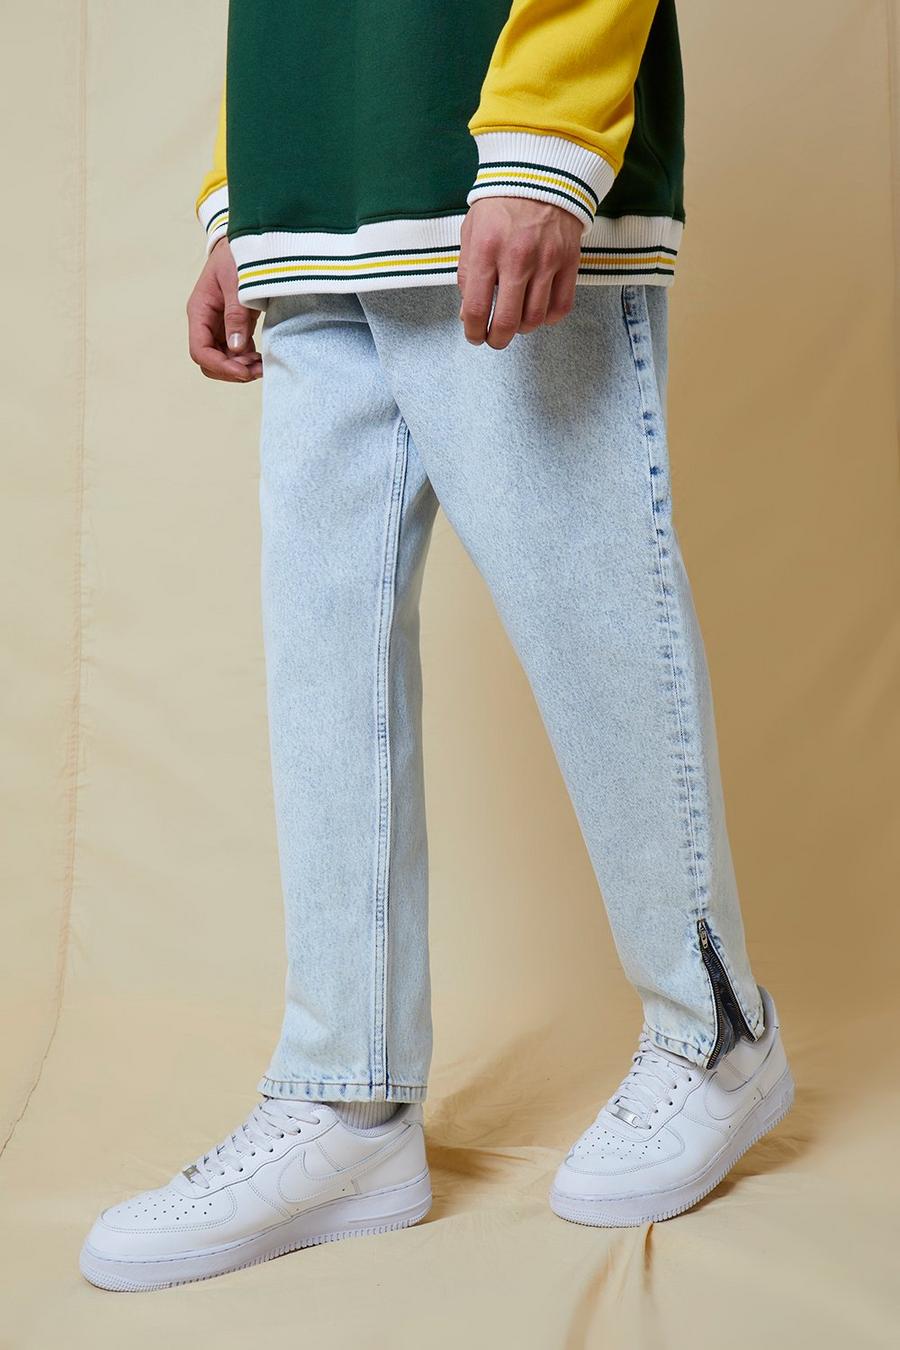 כחול קרח ג'ינס עם הדפס פייזלי בגזרת בלון עם מכפלת פנימית